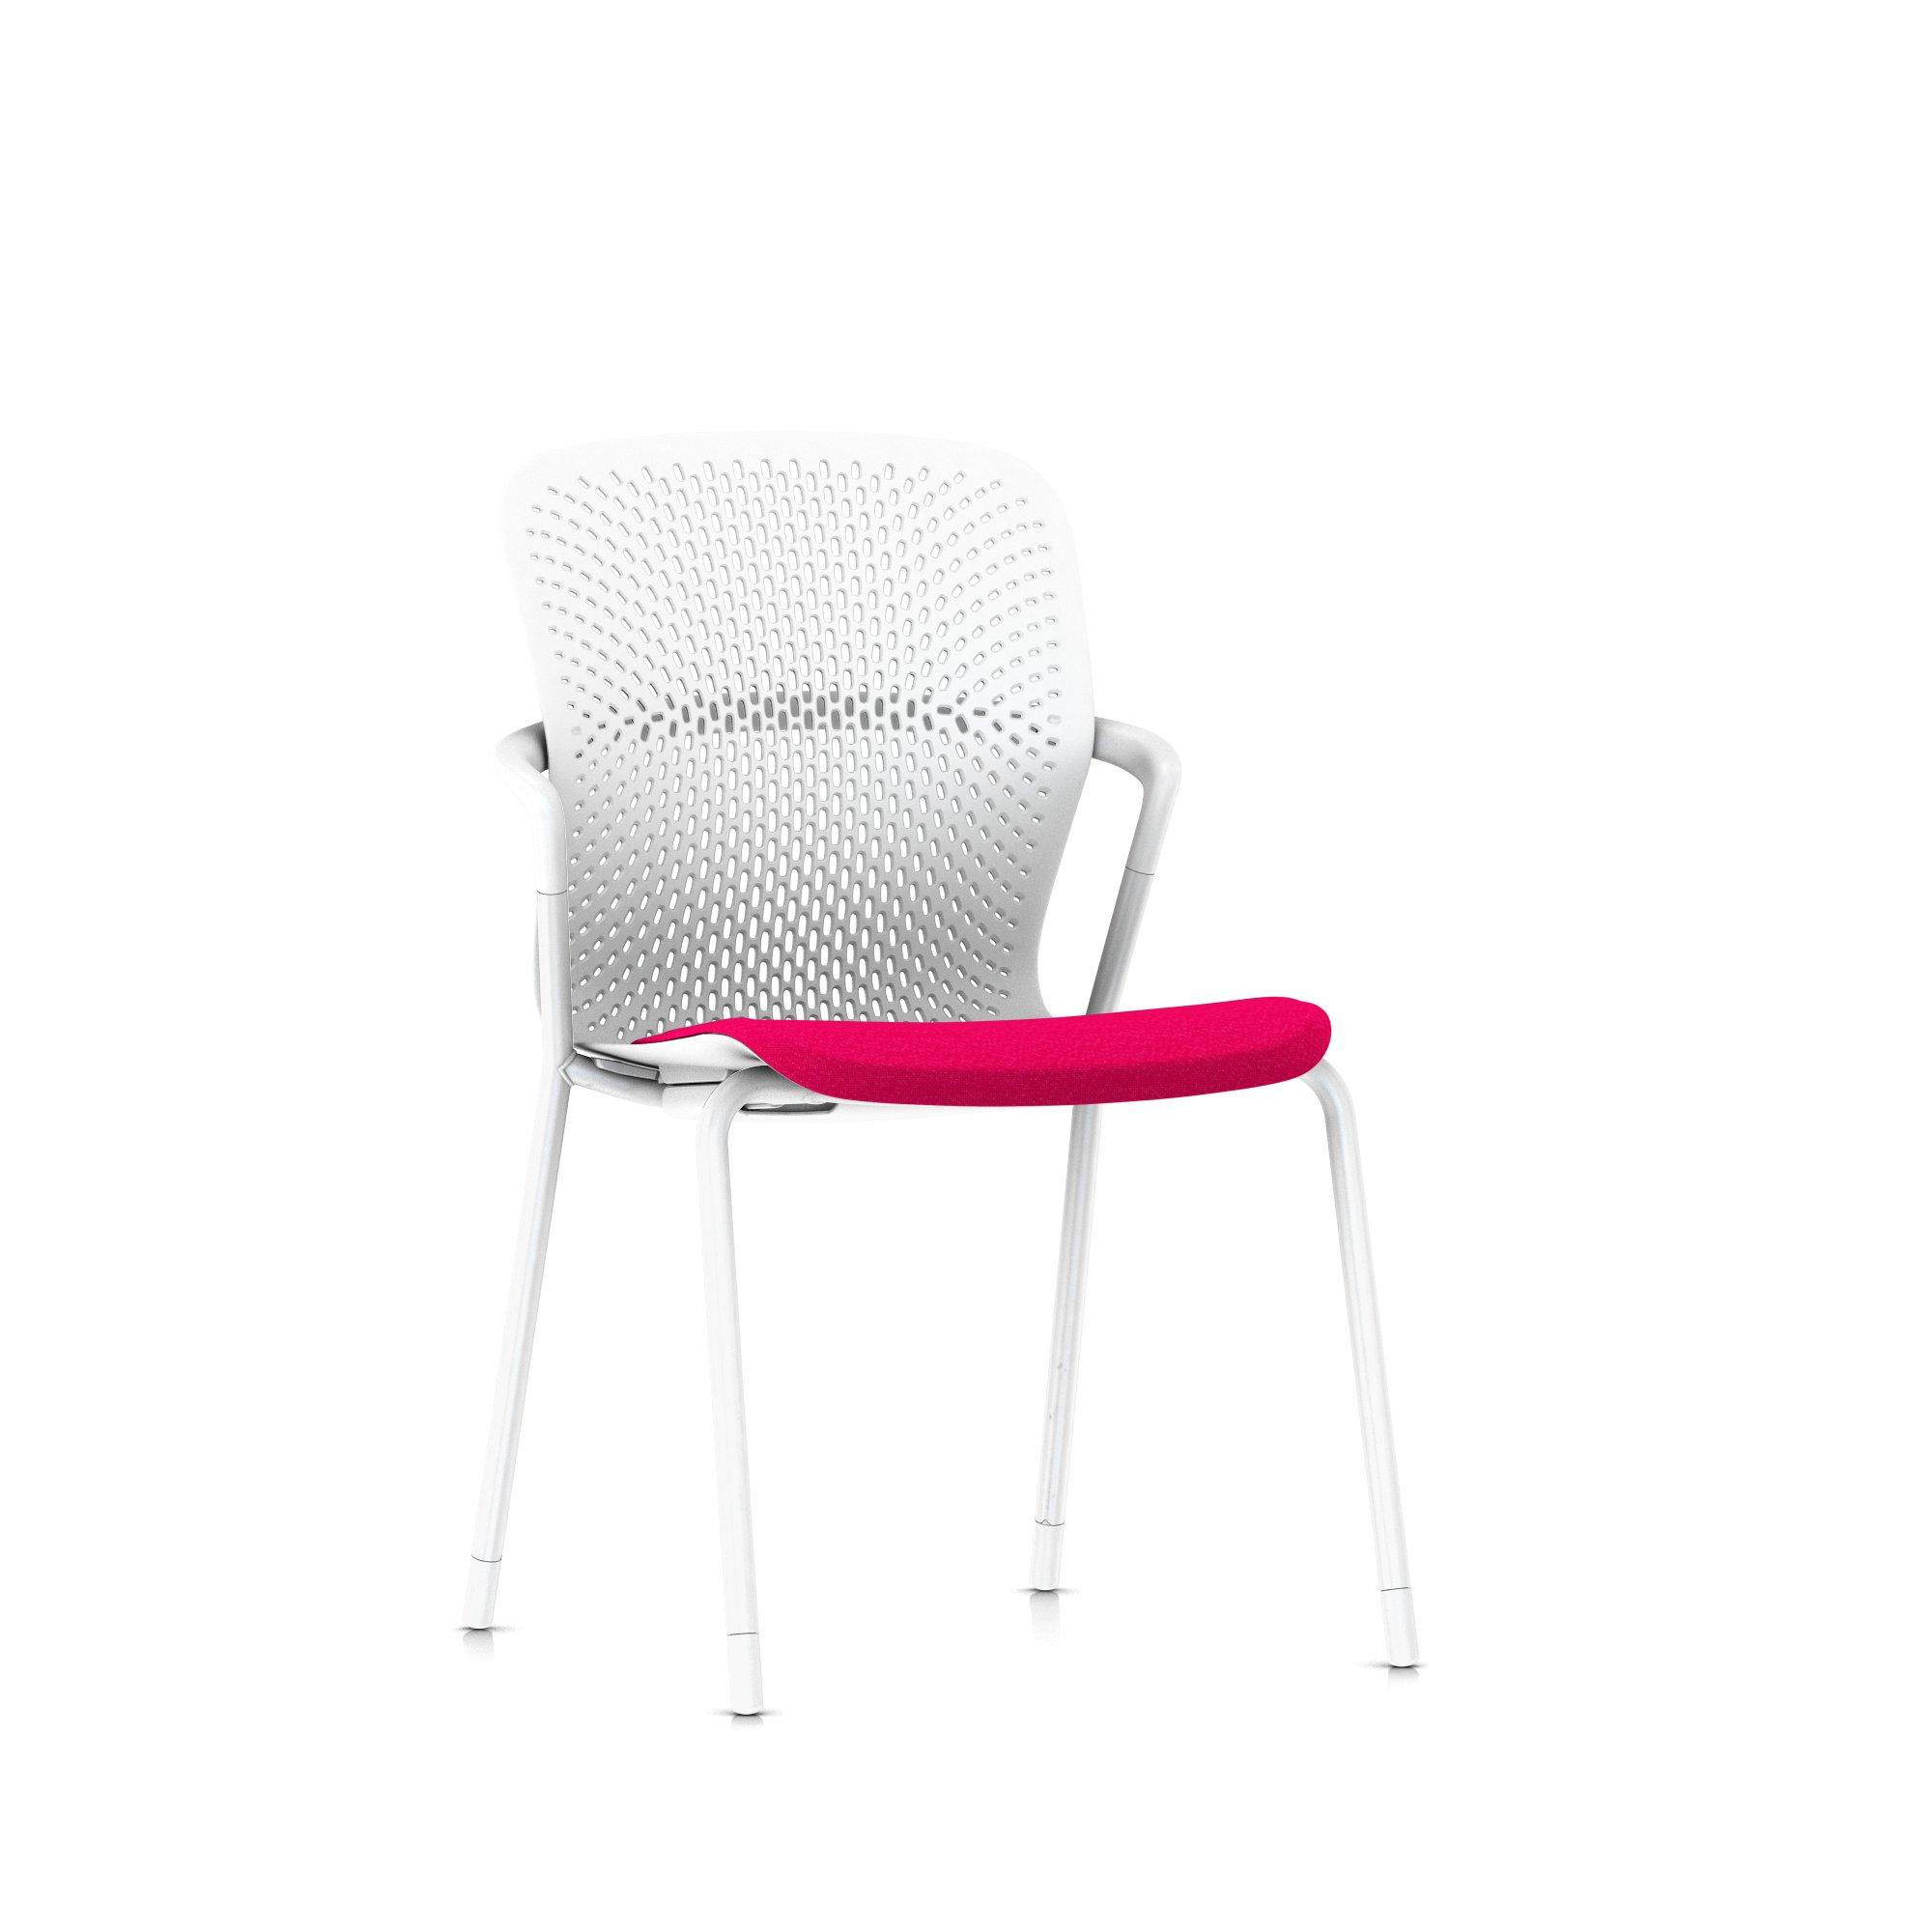 Keyn Chair - 4 Leg